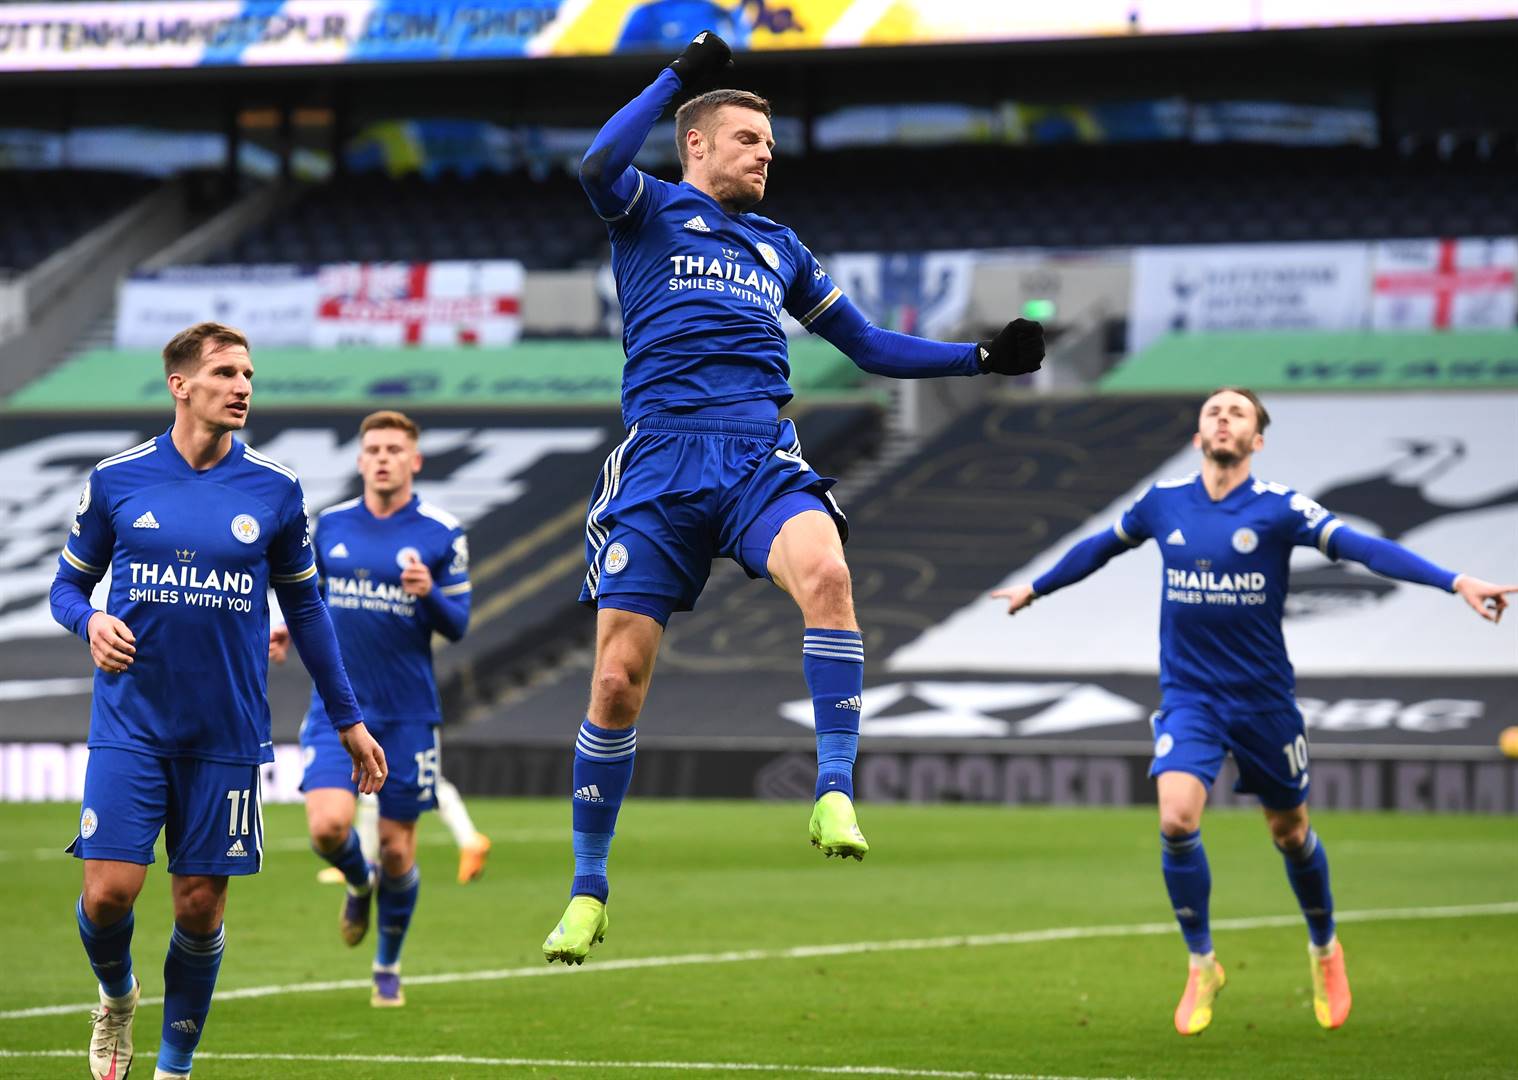 Leicester City se Jamie Vardy vier fees nadat hy ’n strafskop teen Tottenham Hotspur in die doelhok weggebêre het. Leicester het met 2-0 gewen. Foto: Getty Images